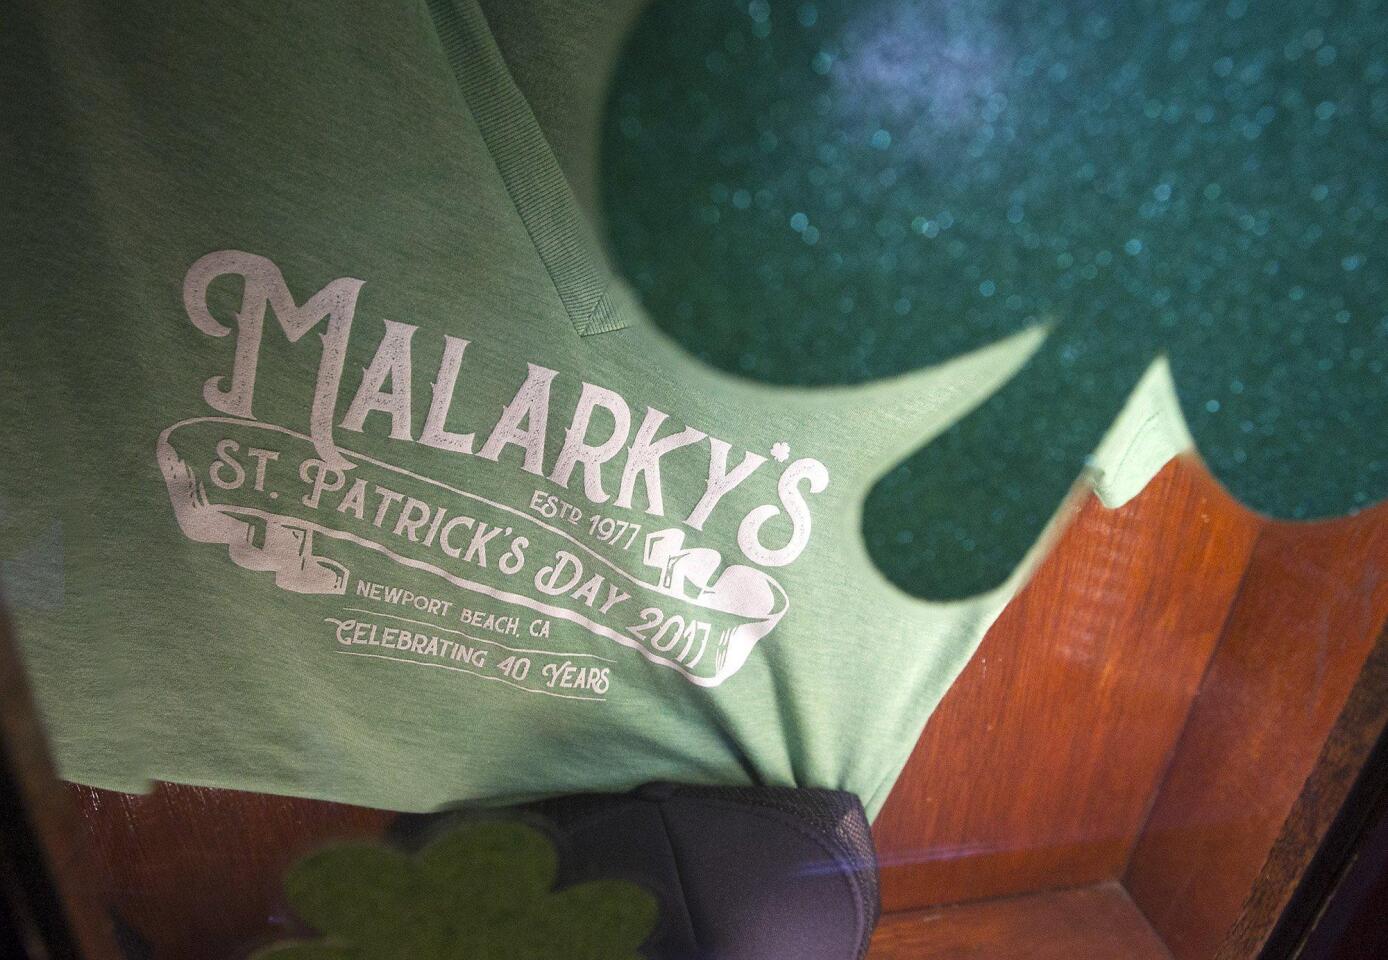 Malarky's